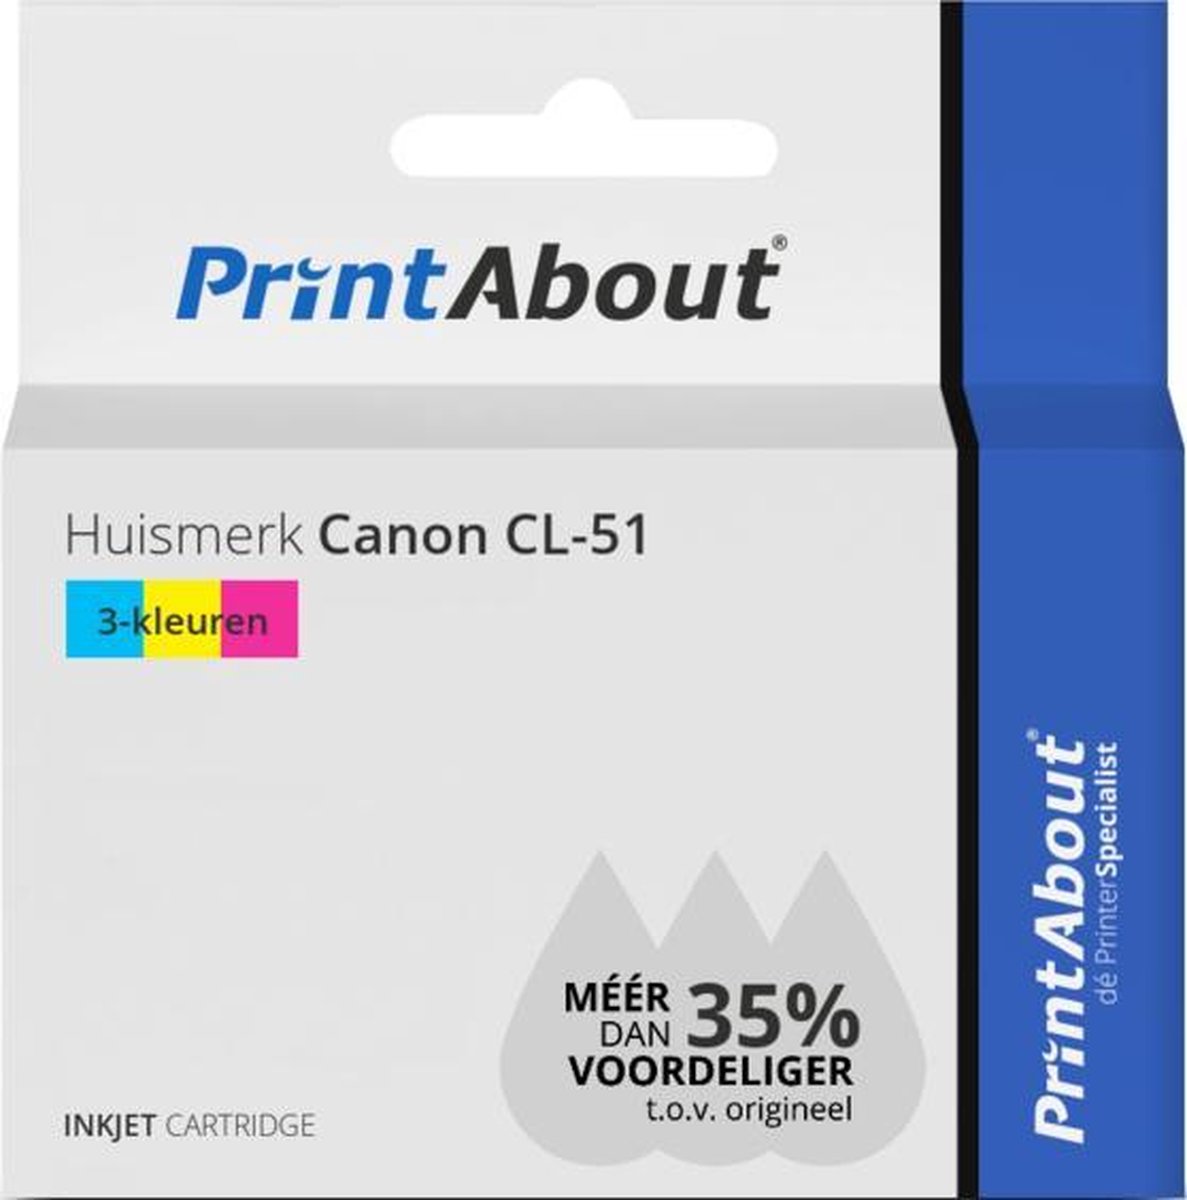 PrintAbout Huismerk Canon CL-51 Inktcartridge 3-kleuren Hoge capaciteit